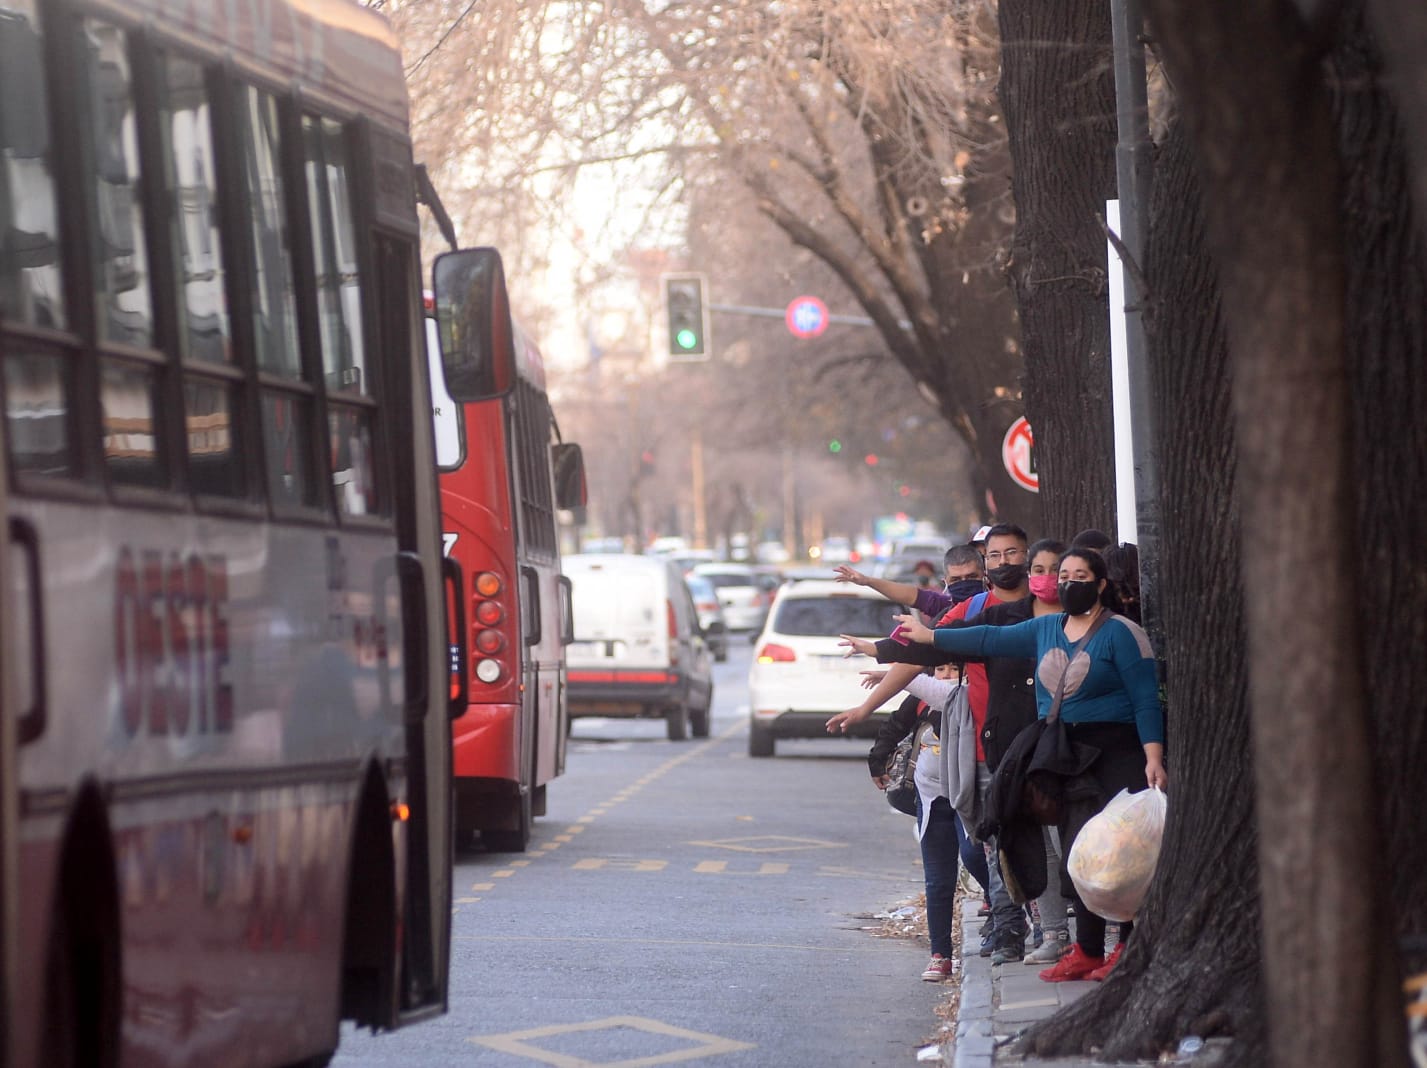 Censo 2022: El transporte será gratuito para los censistas en la provincia de Buenos Aires